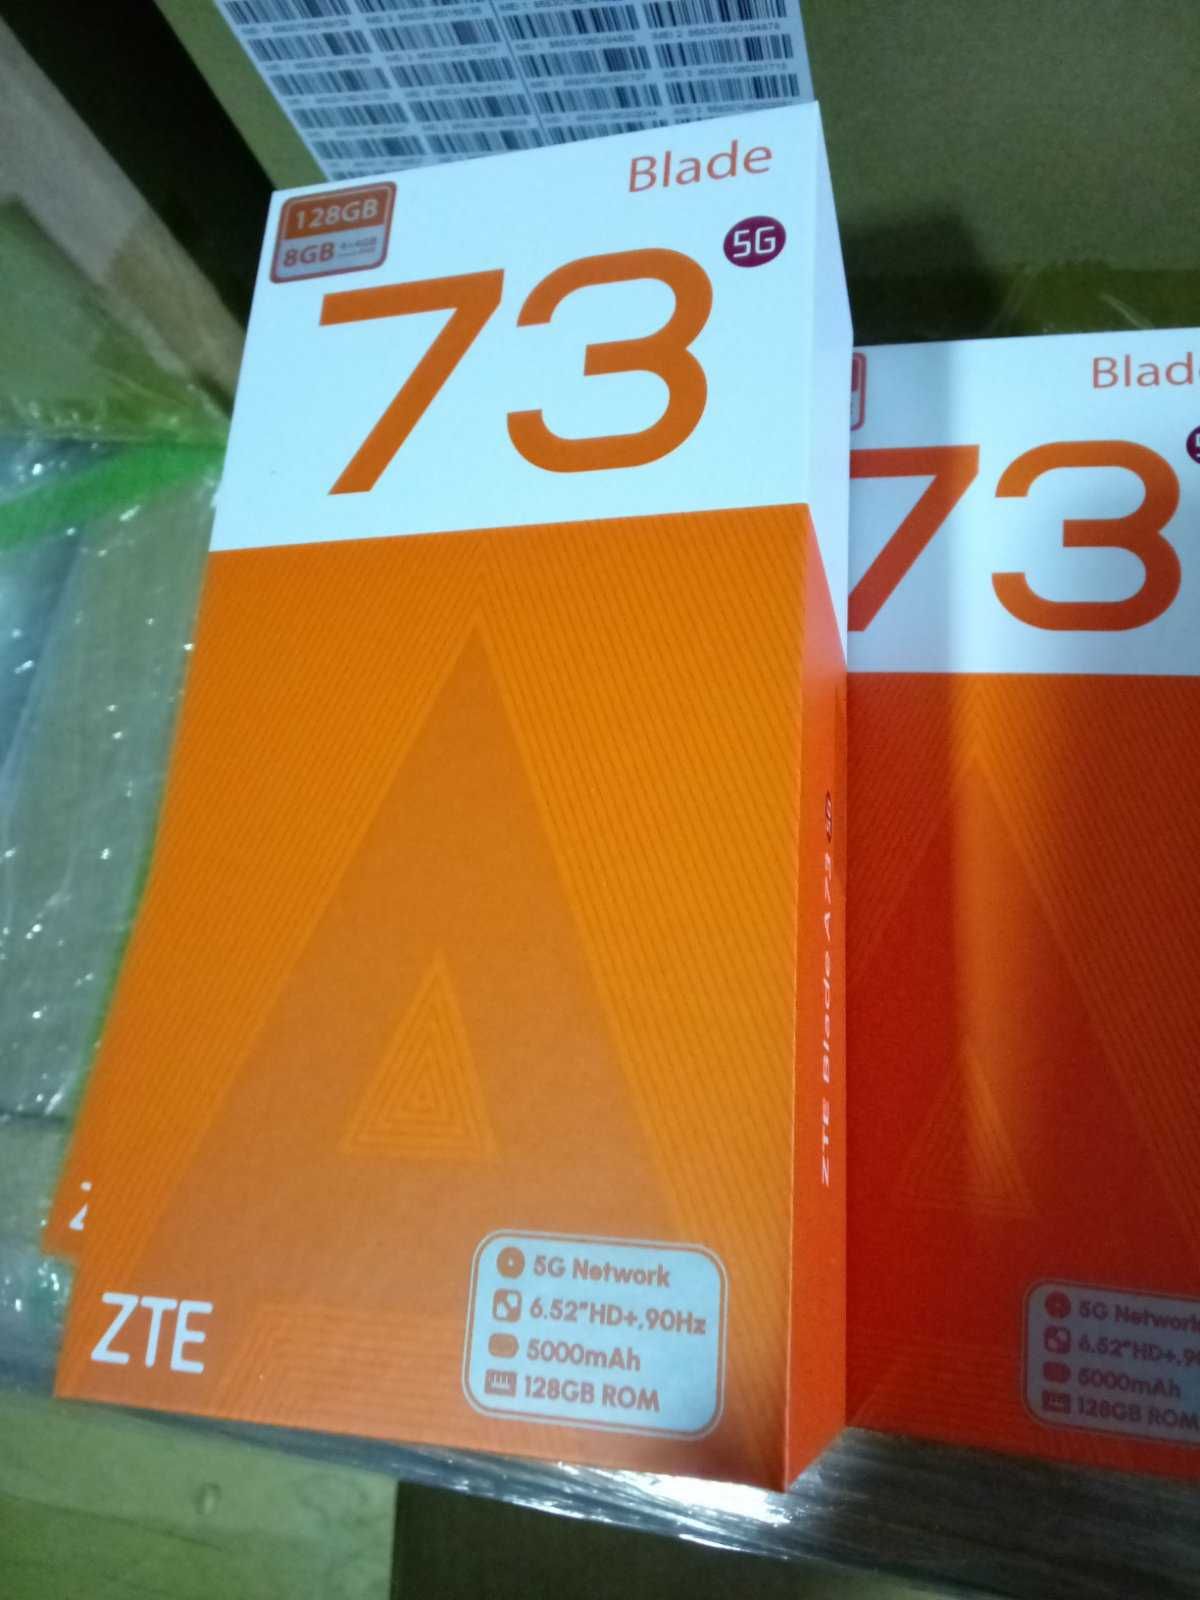 Sprzedaż hurtowa. Smartfony ZTE A73 i A73\5G.